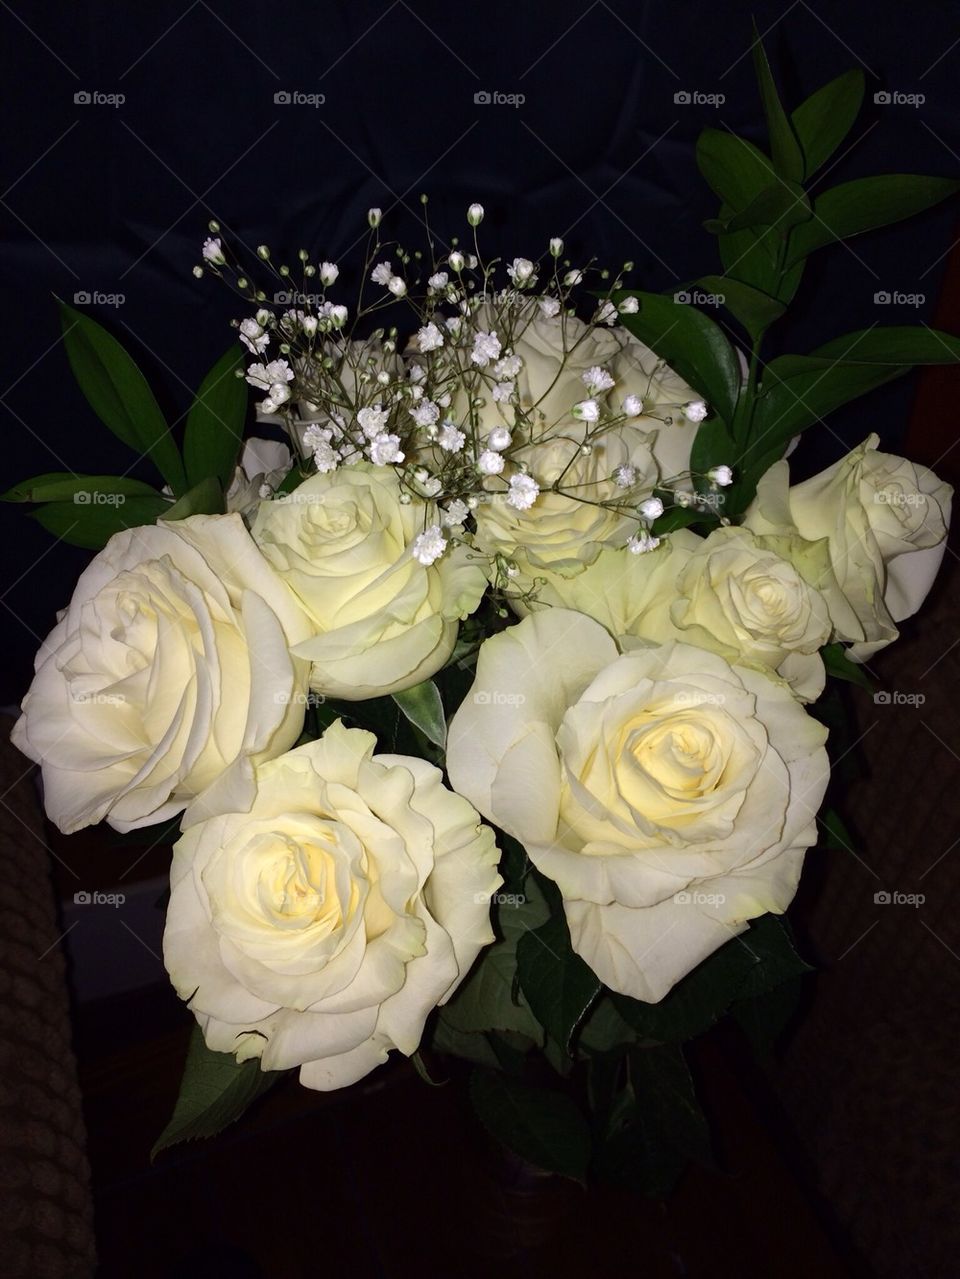 White Roses